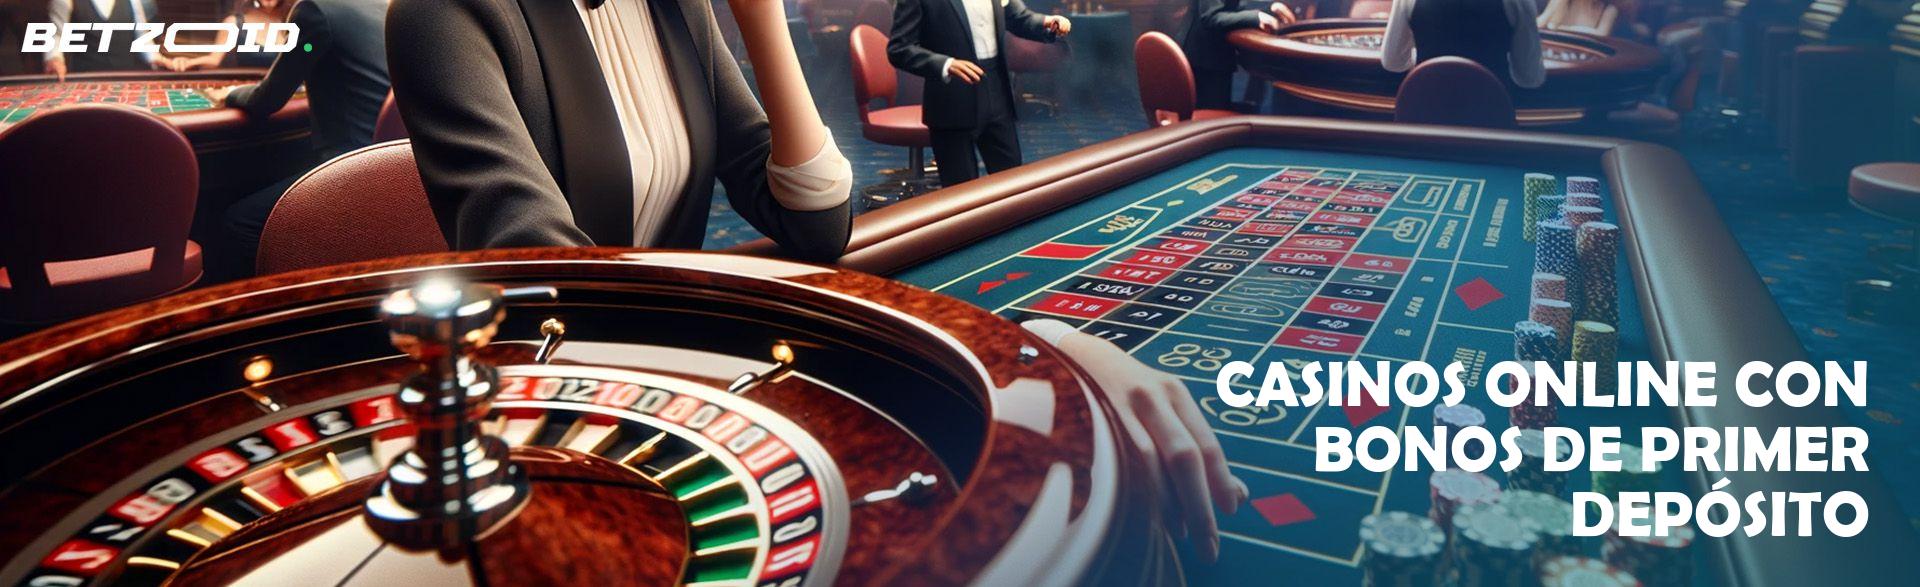 Casinos Online con Bonos de Primer Depósito.